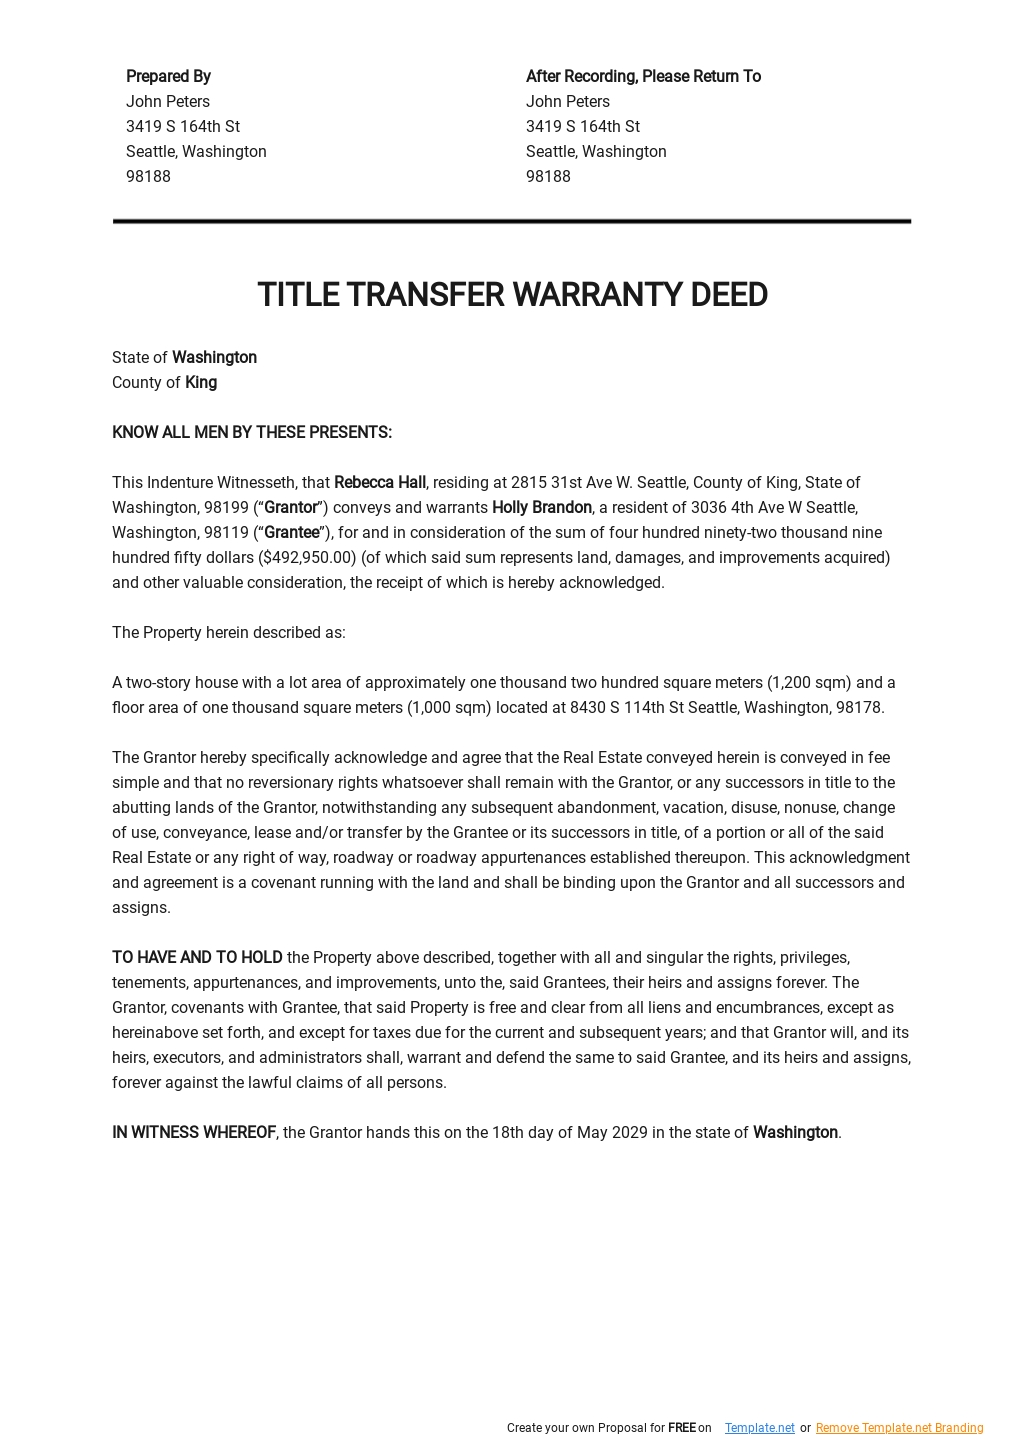 Title Transfer Warranty Deed Template